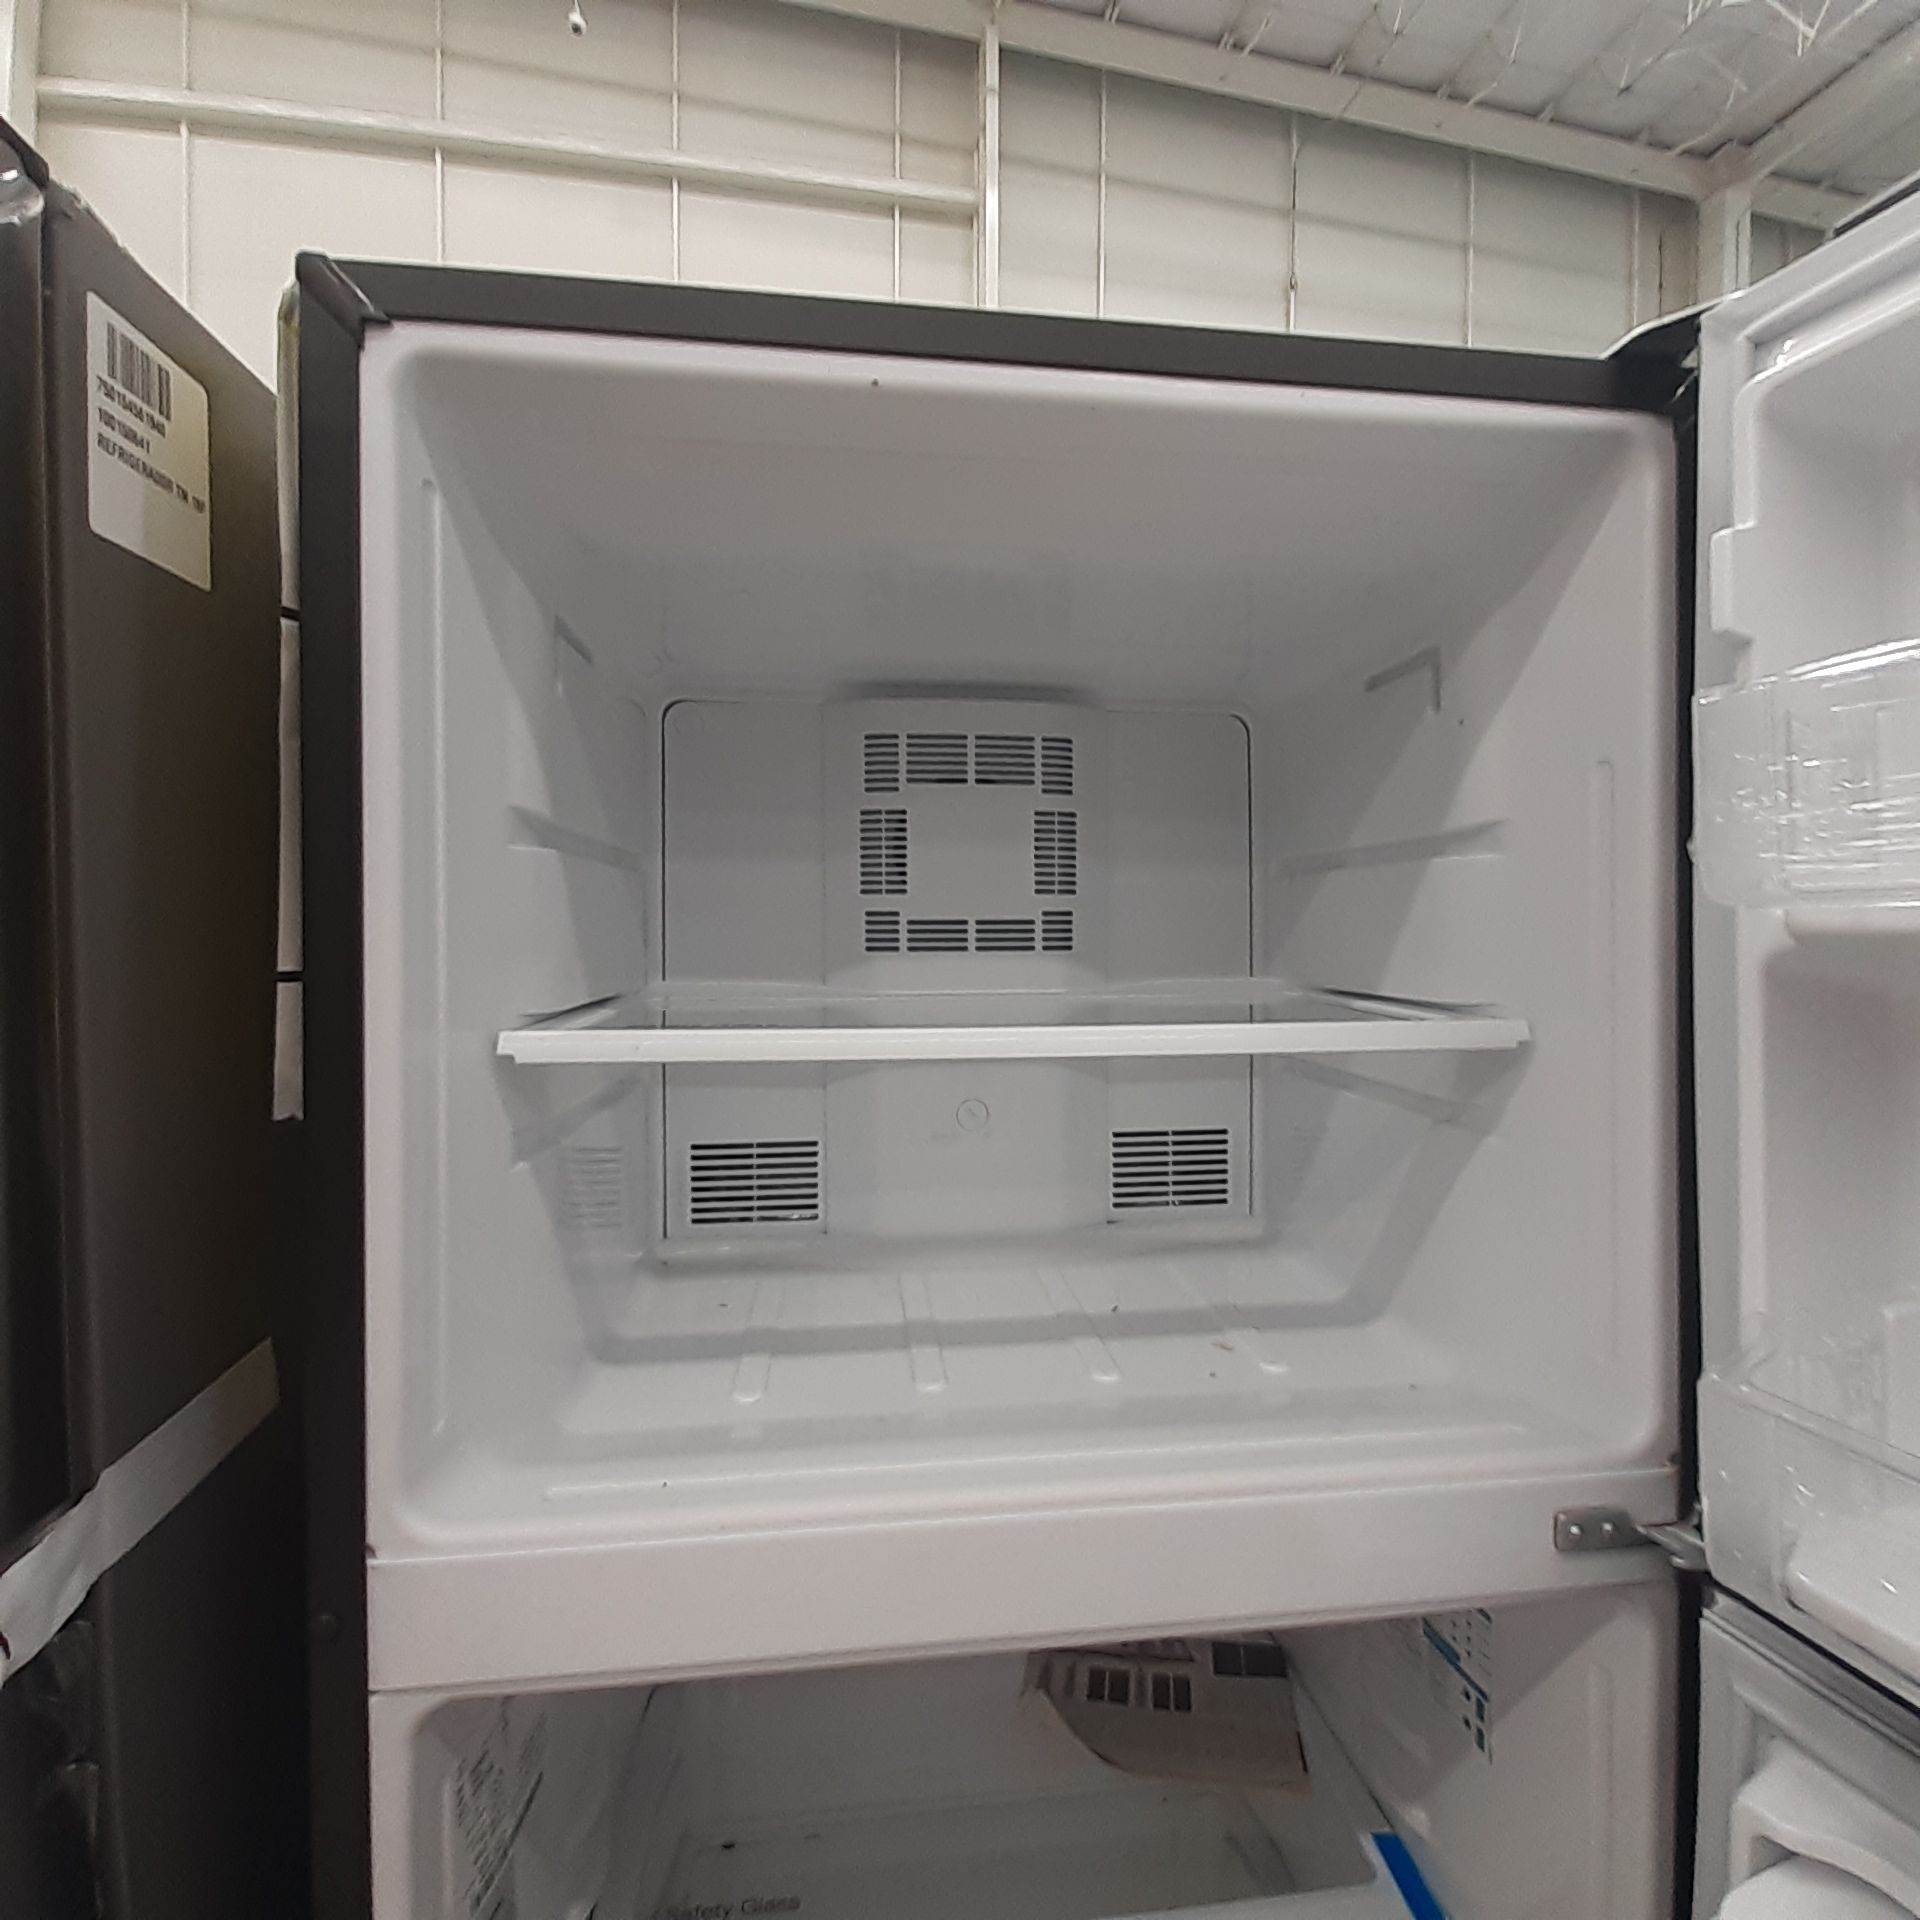 Lote De 3 Refrigeradores: 1 Refrigerador Marca Whirlpool, 1 Refrigerador Marca Mabe, 1 Refrigerador - Image 21 of 22